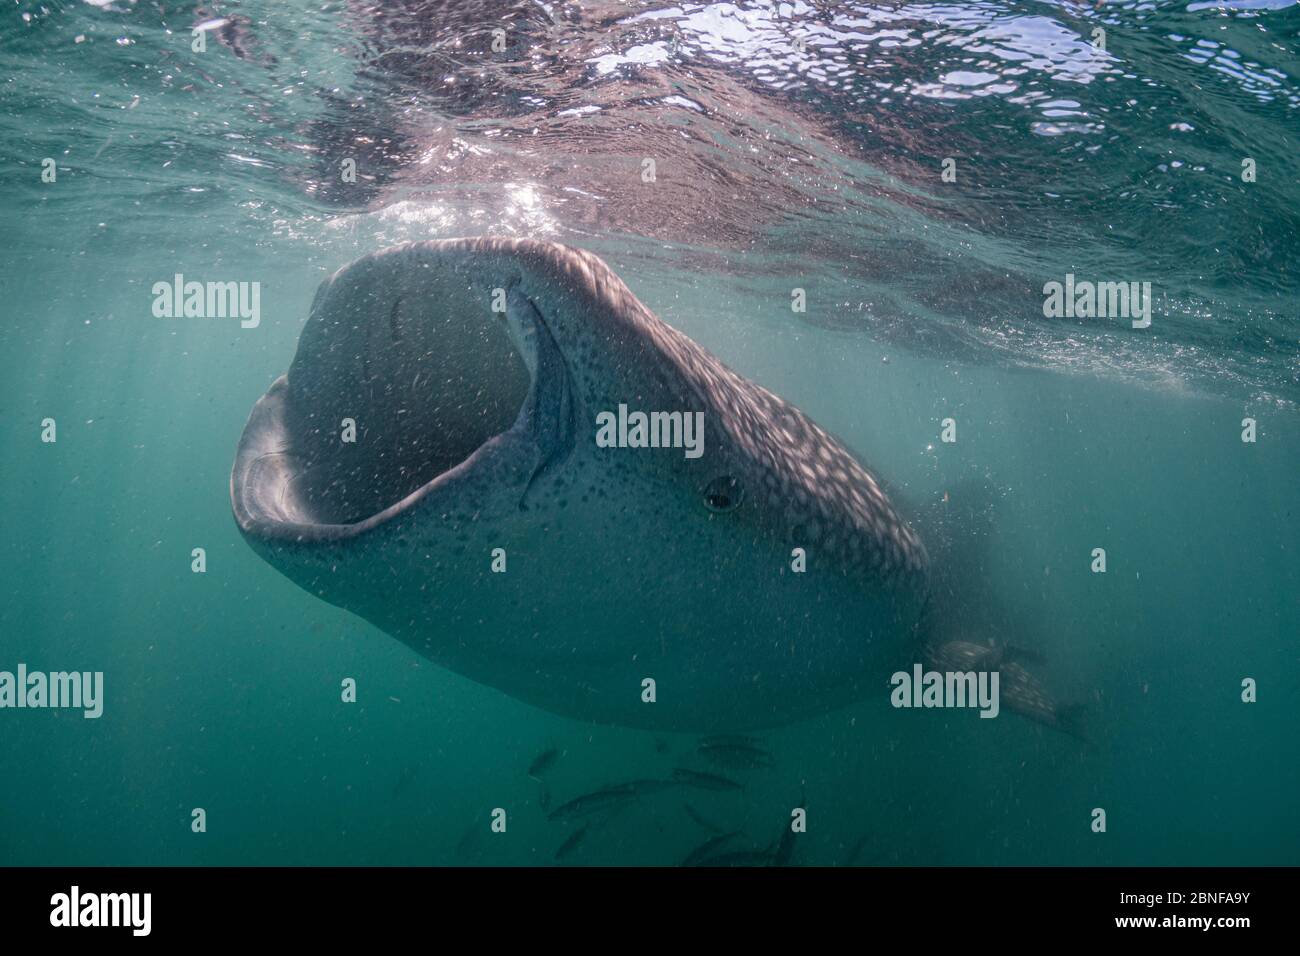 Uno squalo balena giovanile che si nutre appena sotto la superficie Foto Stock